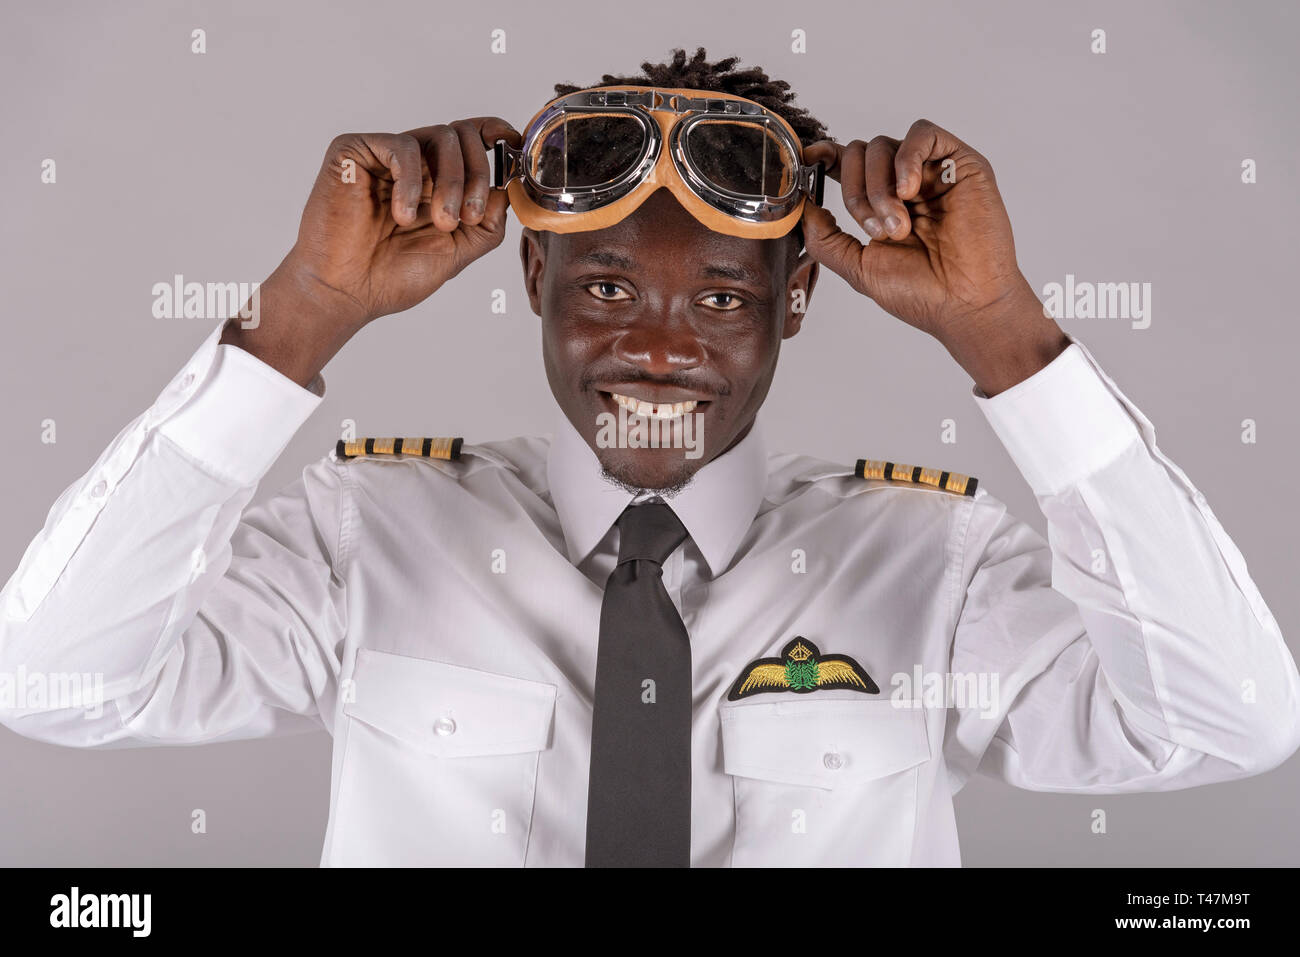 Jeune pilote portant une paire de lunettes vintage pour une blague. Banque D'Images